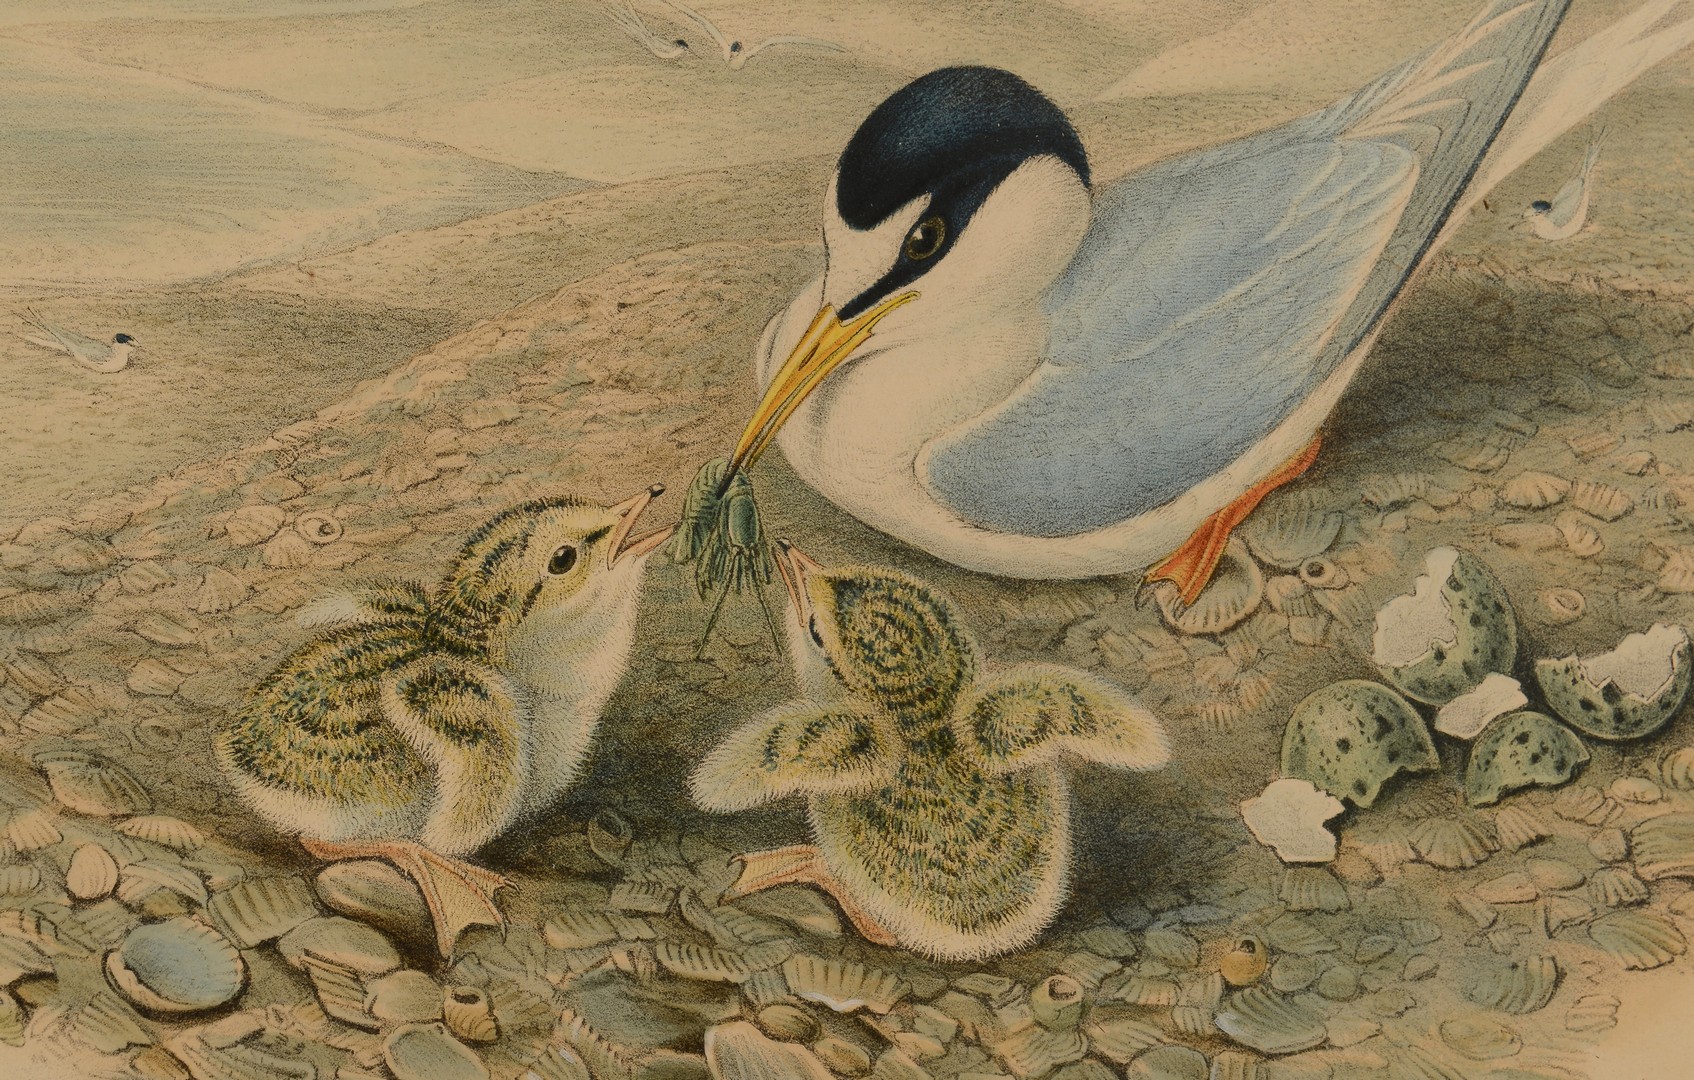 Lot 551: Pr. Gould & Richter & 1 A. Wilson Bird Prints, 3 total